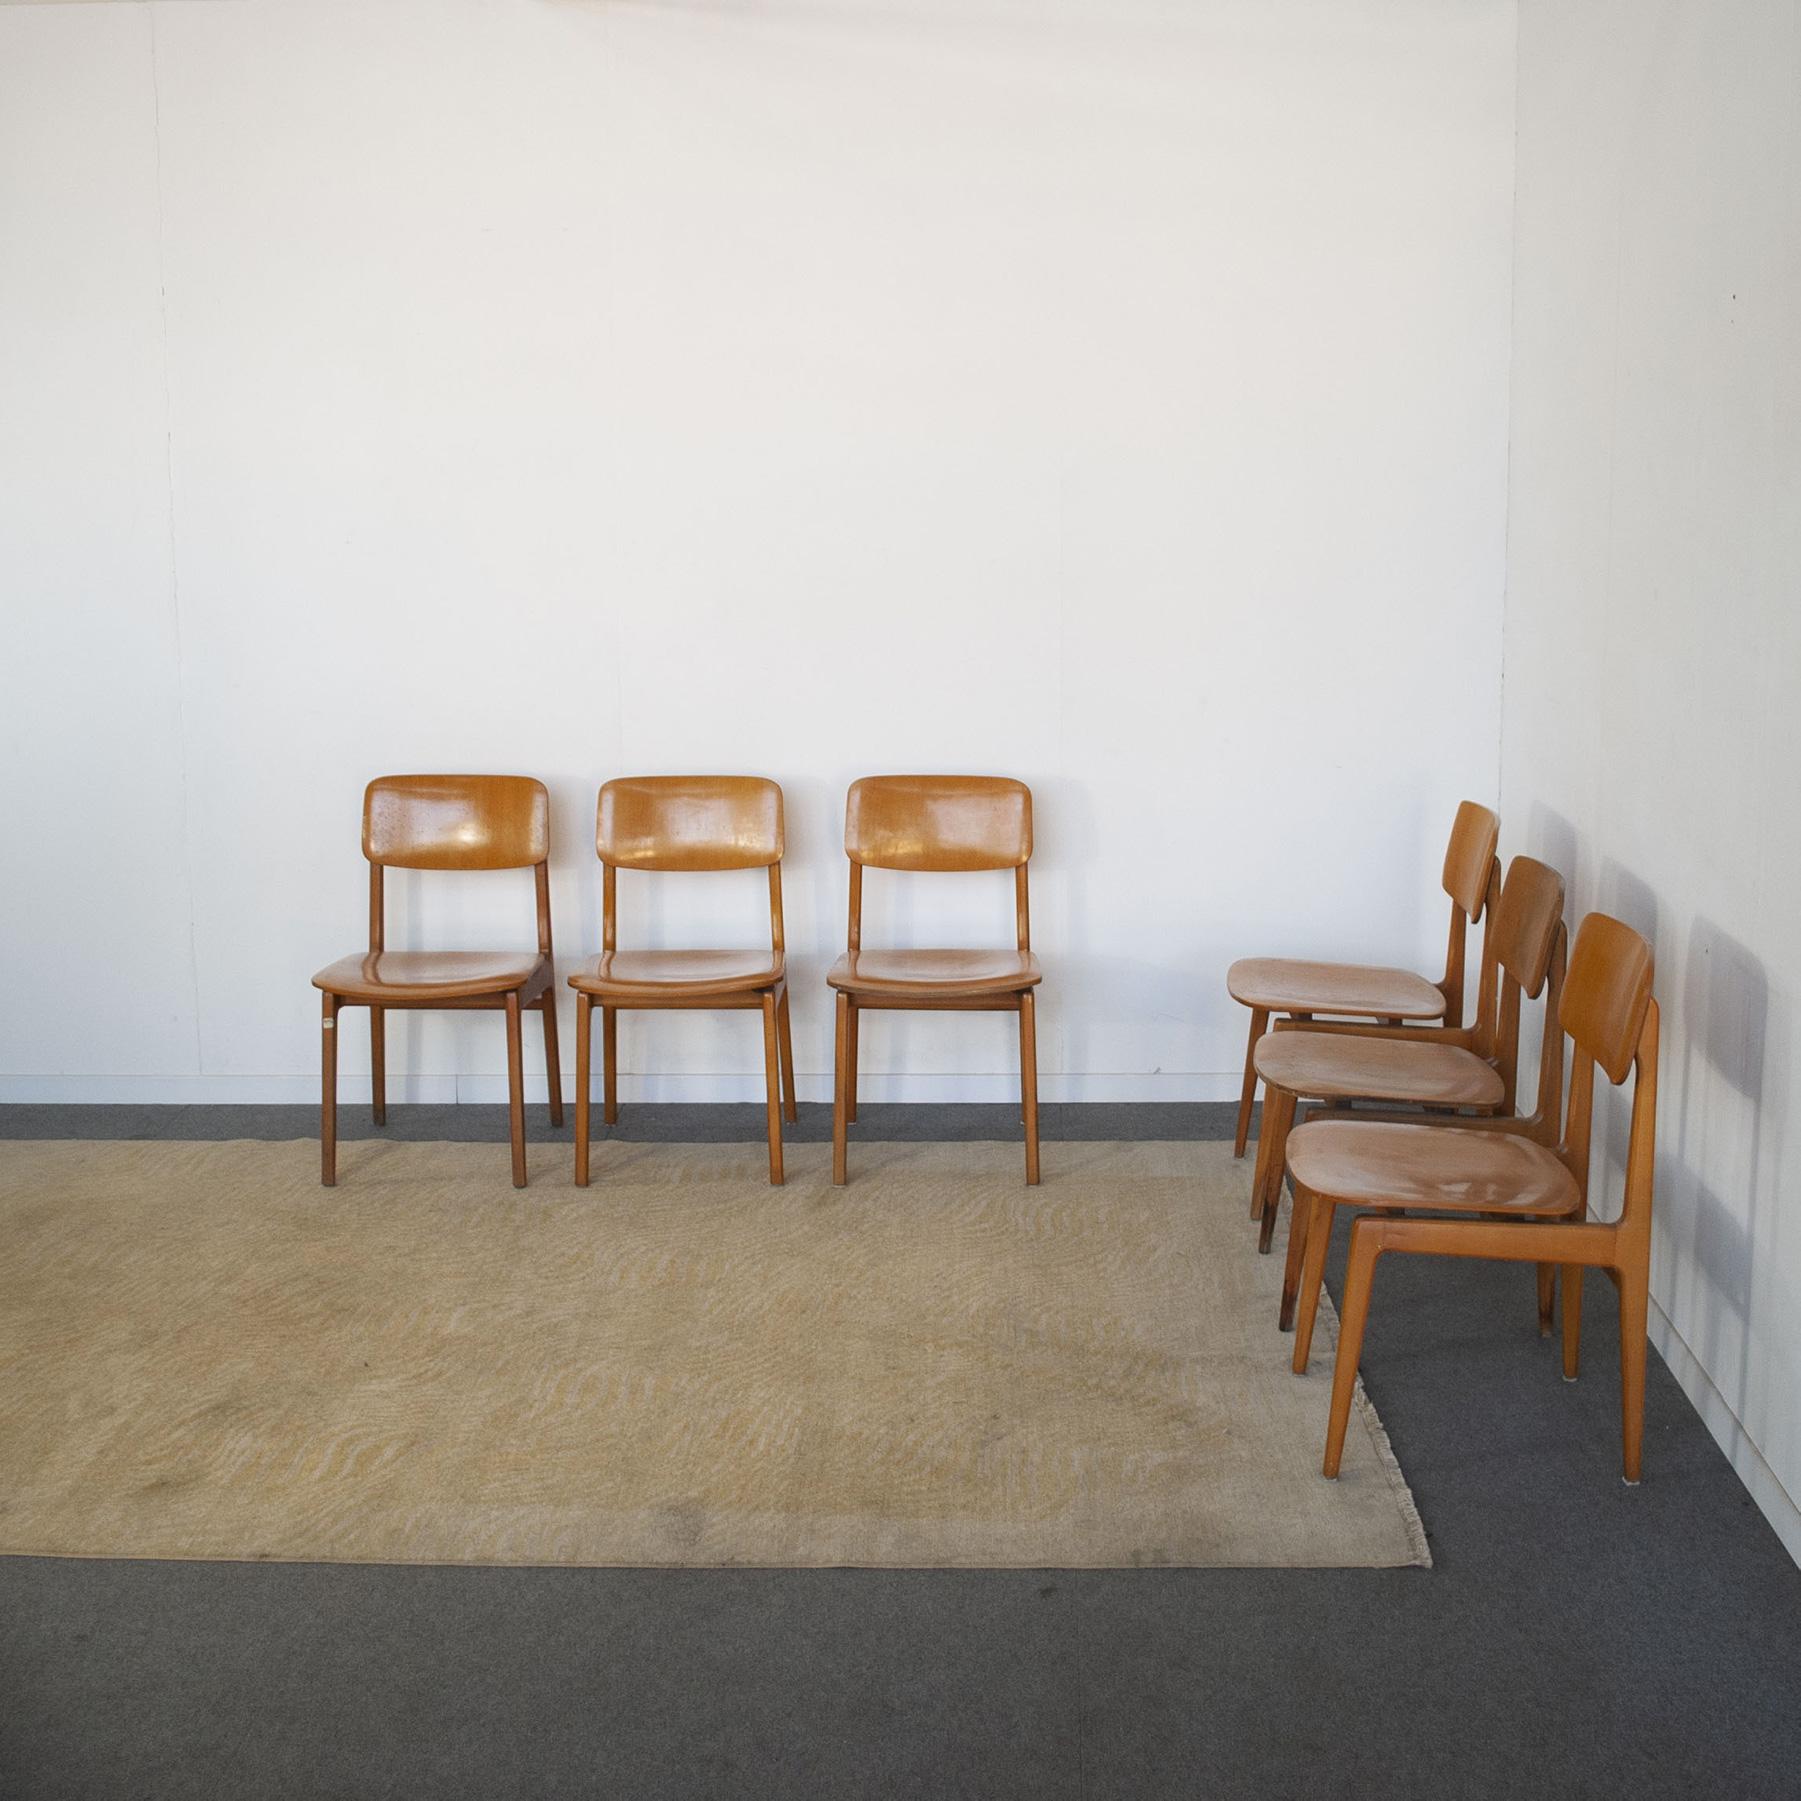 Ensemble de six chaises en bois d'érable, production exclusive pour les bureaux Sip (téléphonie) Anonima Castelli Bologna 60s.